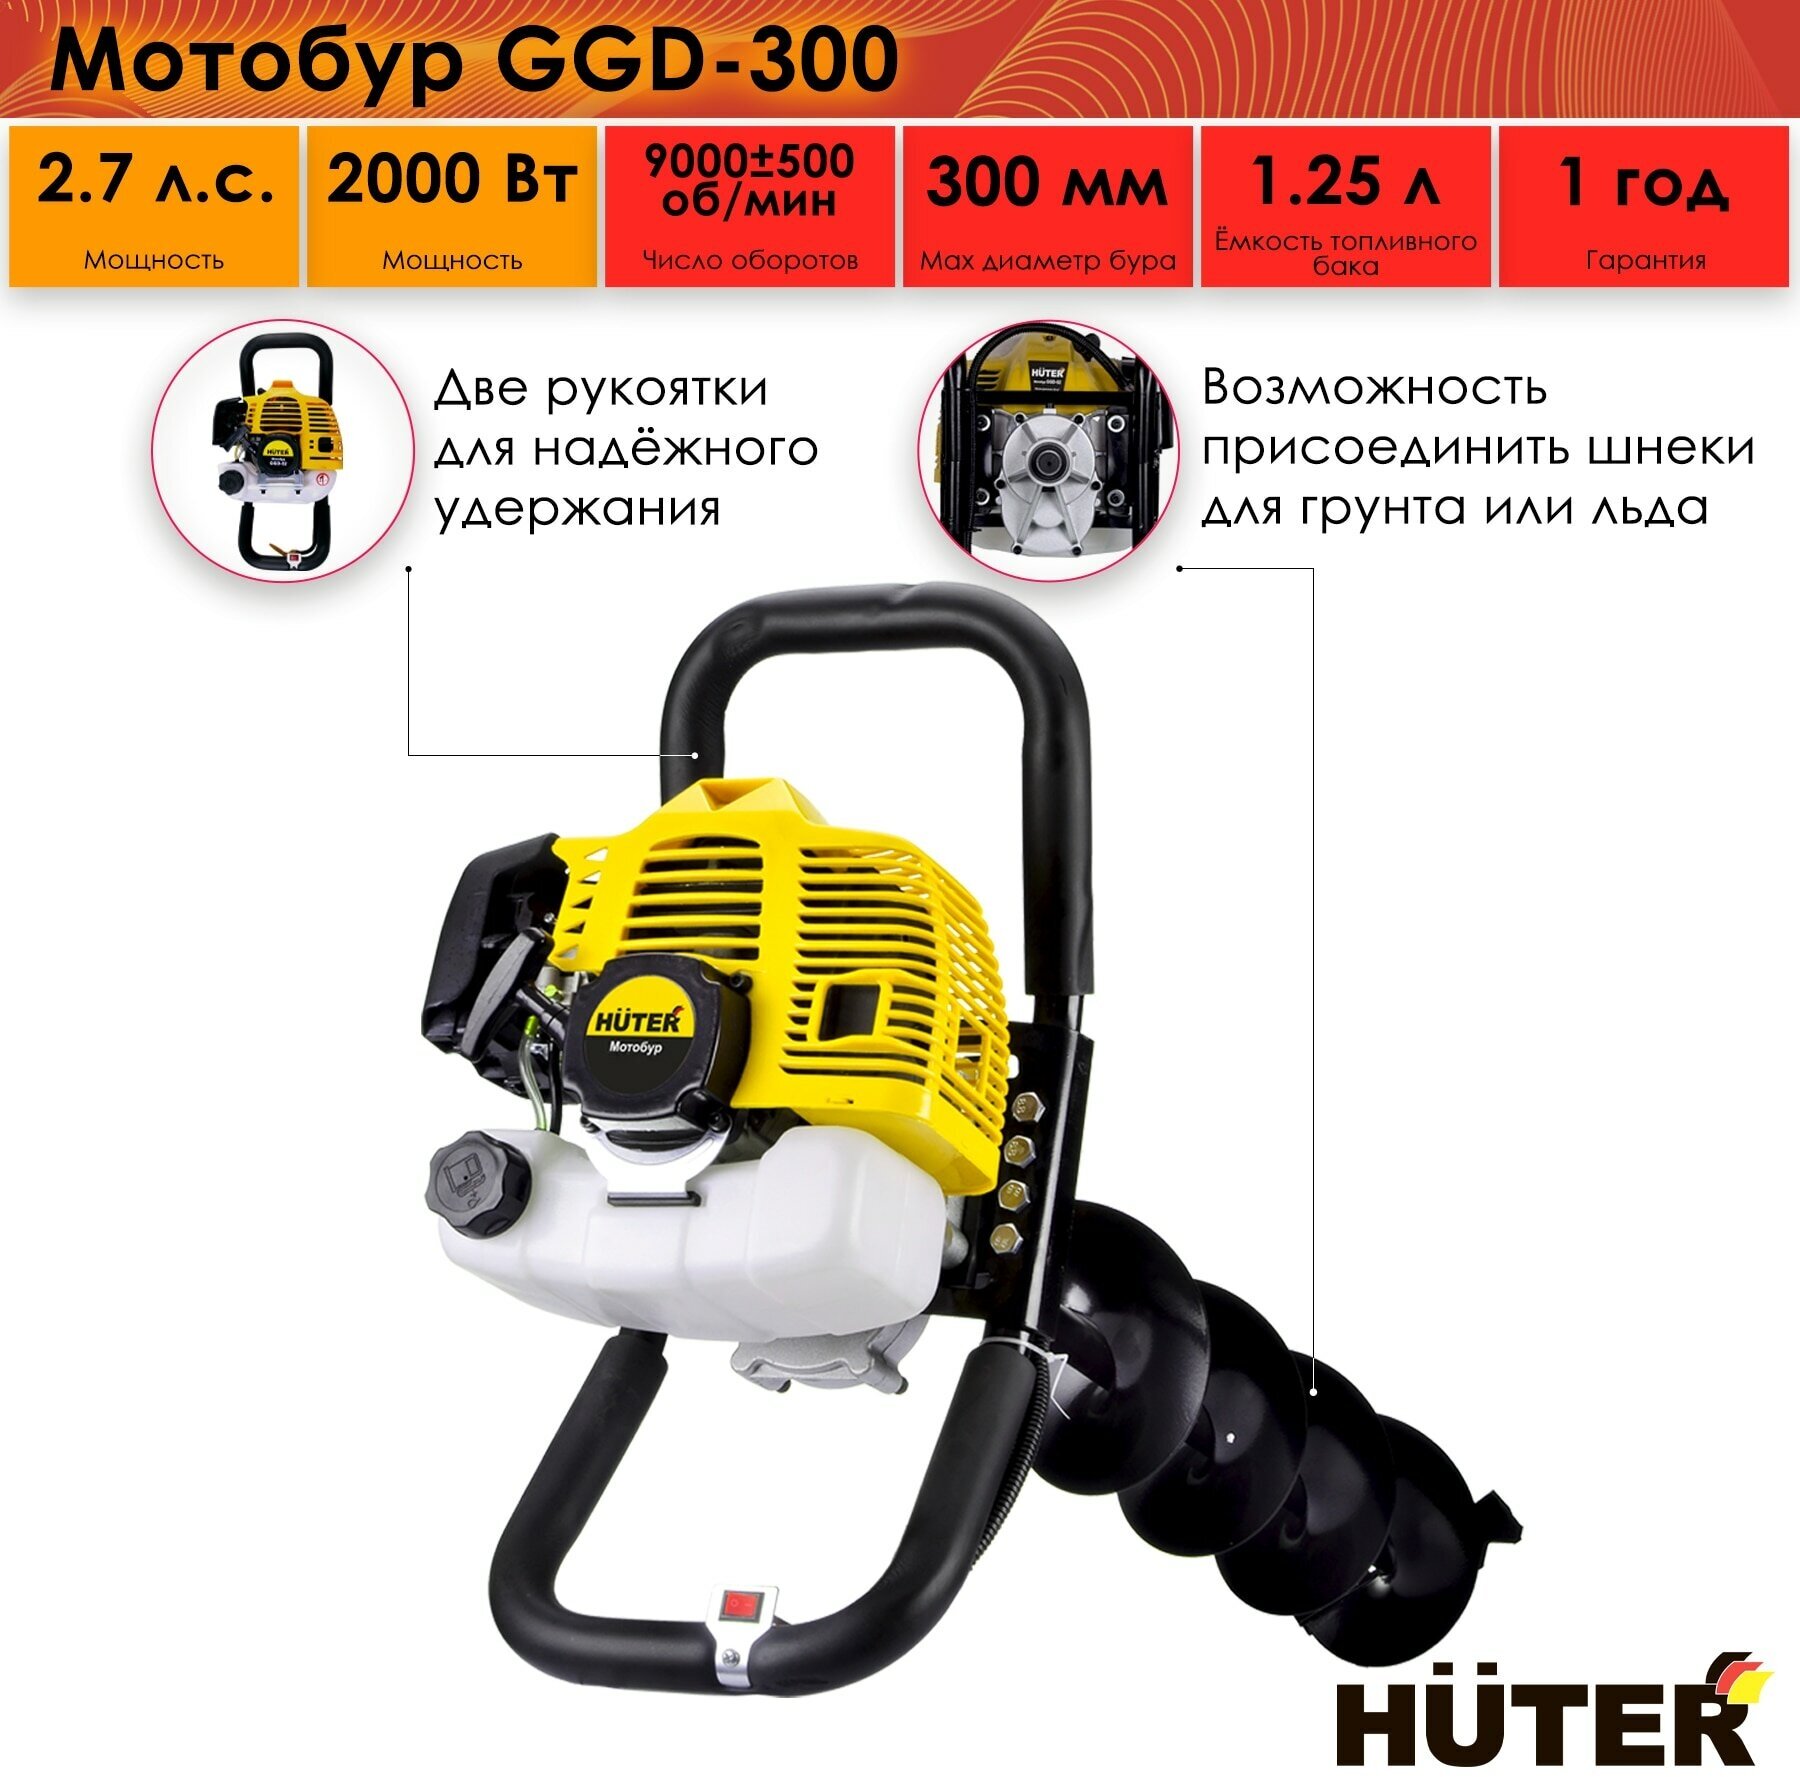 Мотобур HUTER GGD-300, 2 кВТ